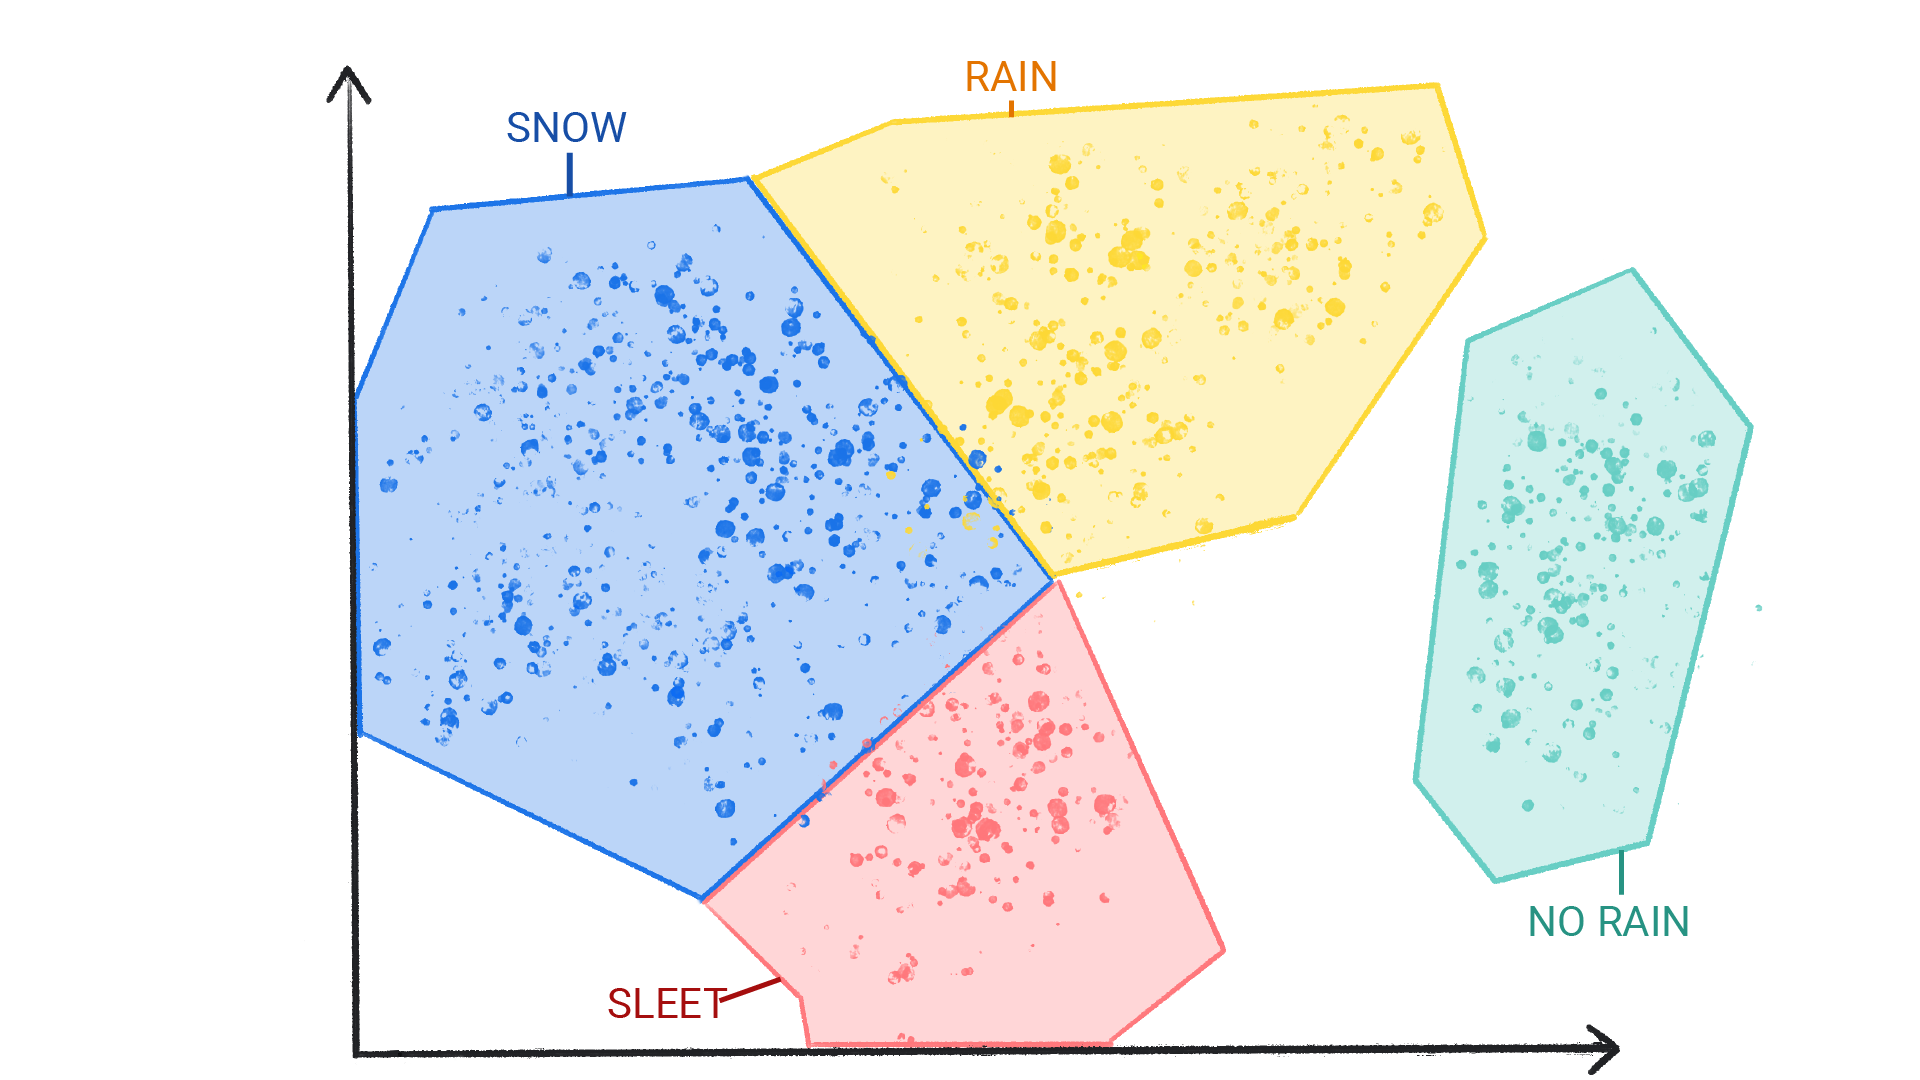 눈, 비, 우박, 비가 오지 않음으로 라벨이 지정된 여러 색의 점이 도형으로 둘러싸여 서로 경계로 표시된 이미지를 보여주는 이미지입니다.